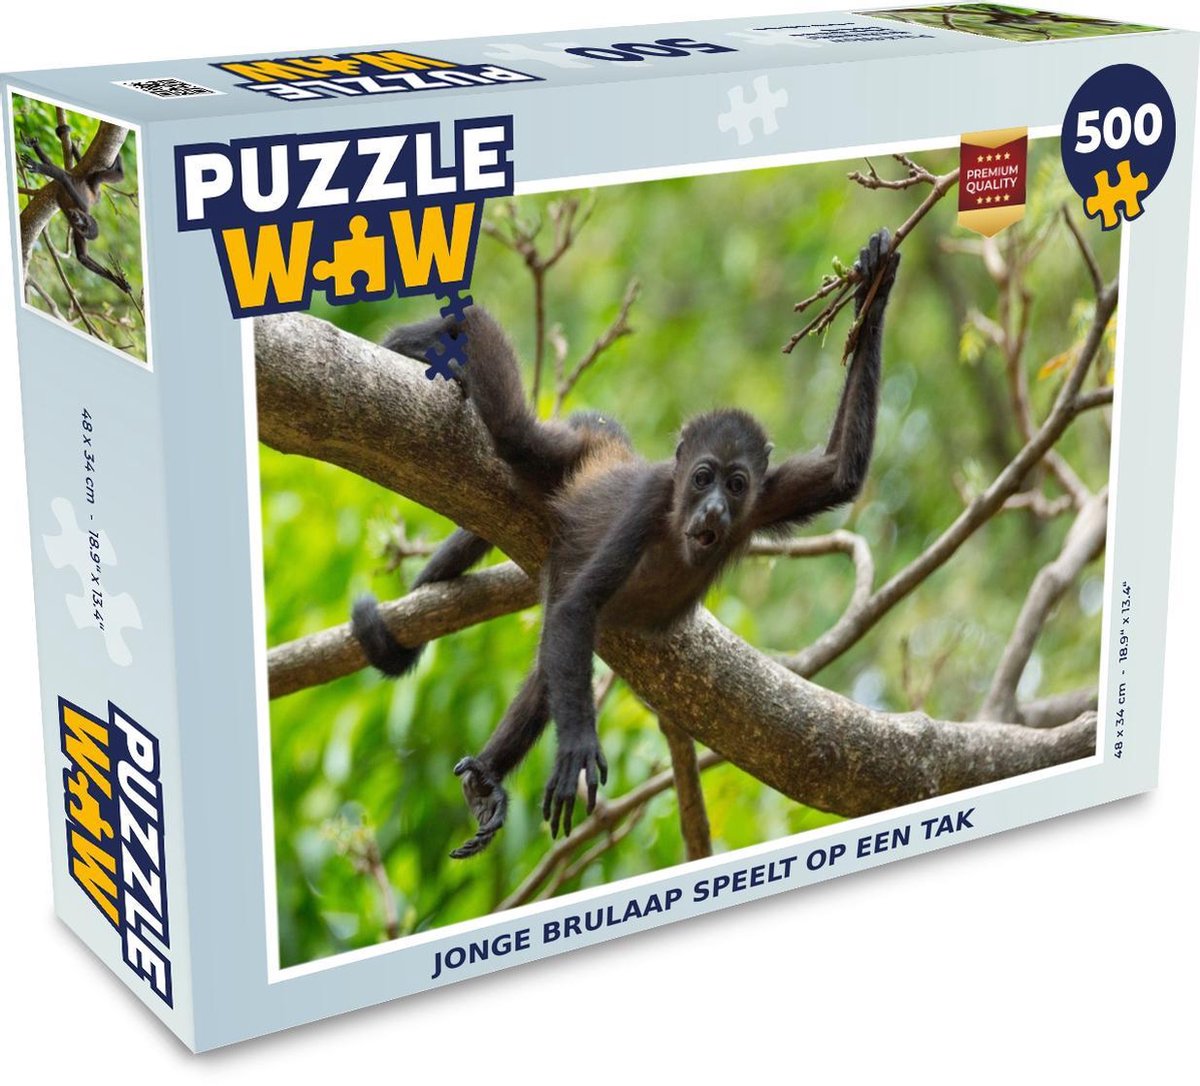 Afbeelding van product Puzzel 500 stukjes Brulaap - Jonge brulaap speelt op een tak puzzel 500 stukjes - PuzzleWow heeft +100000 puzzels